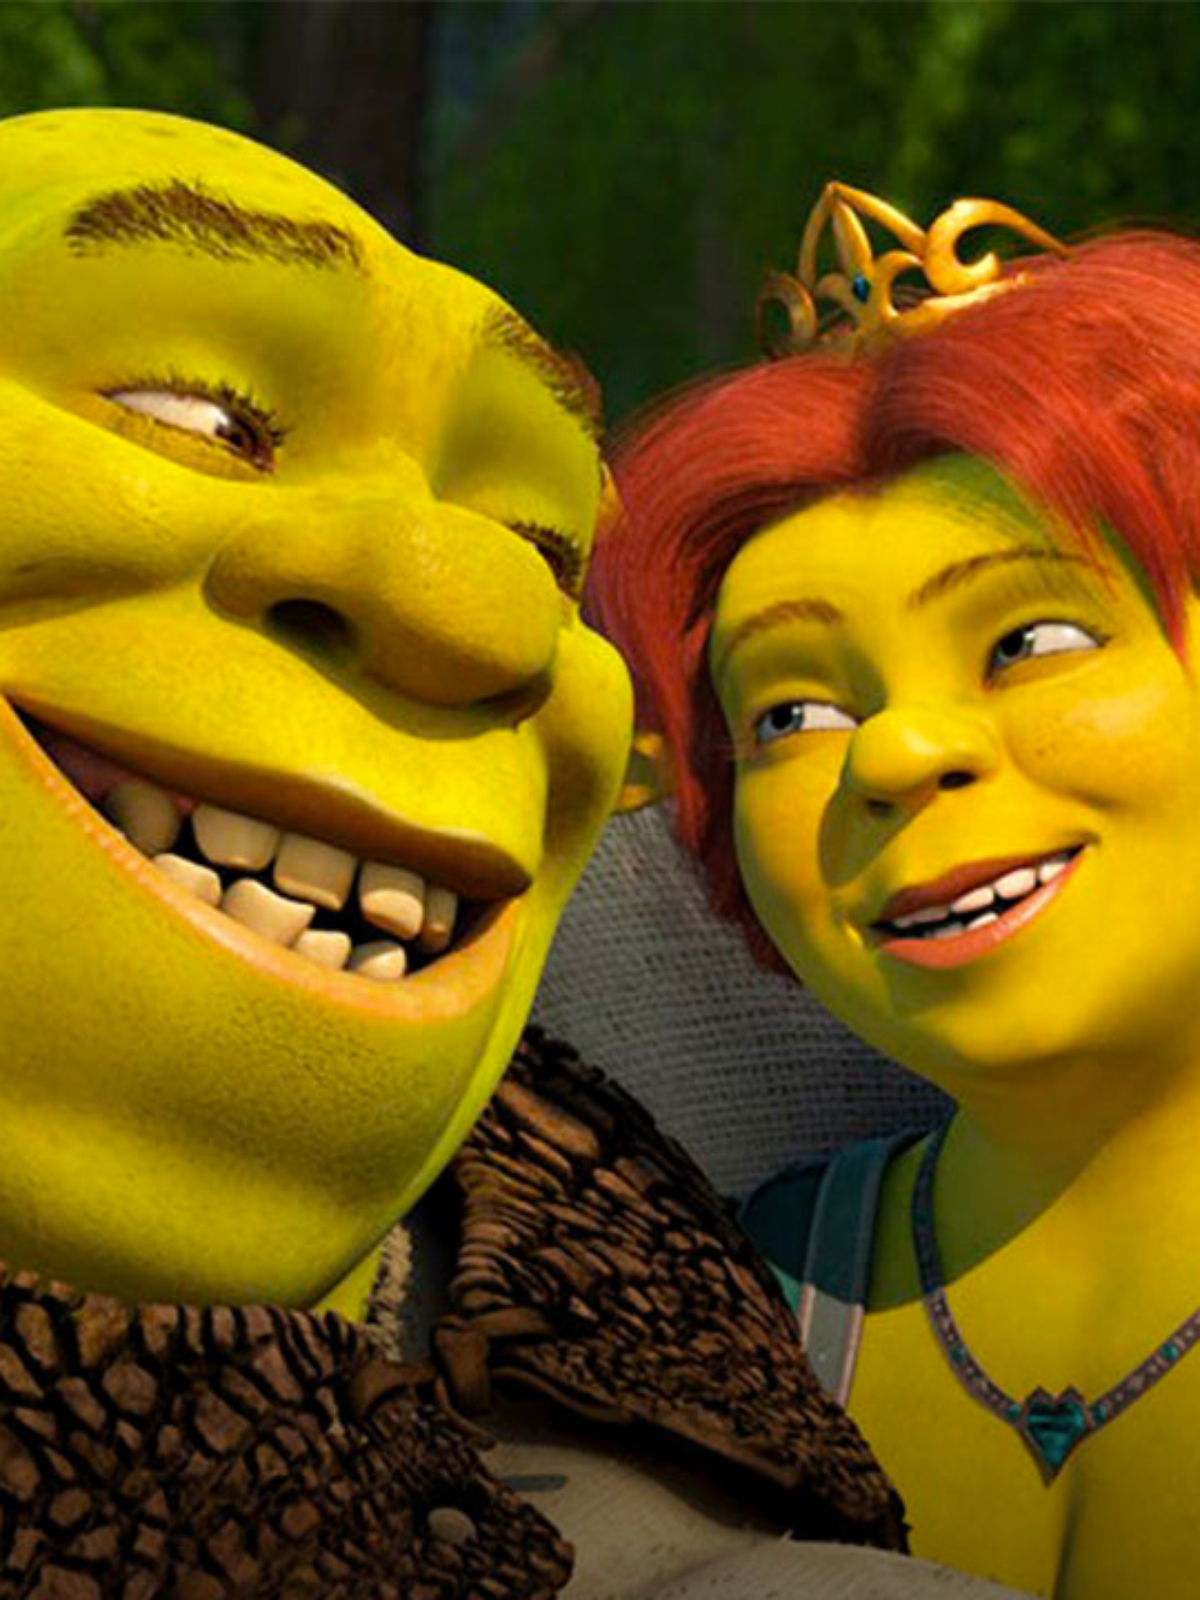 Solta o Play Shrek assoprou uma perereca e deu a Fiona e Fiona